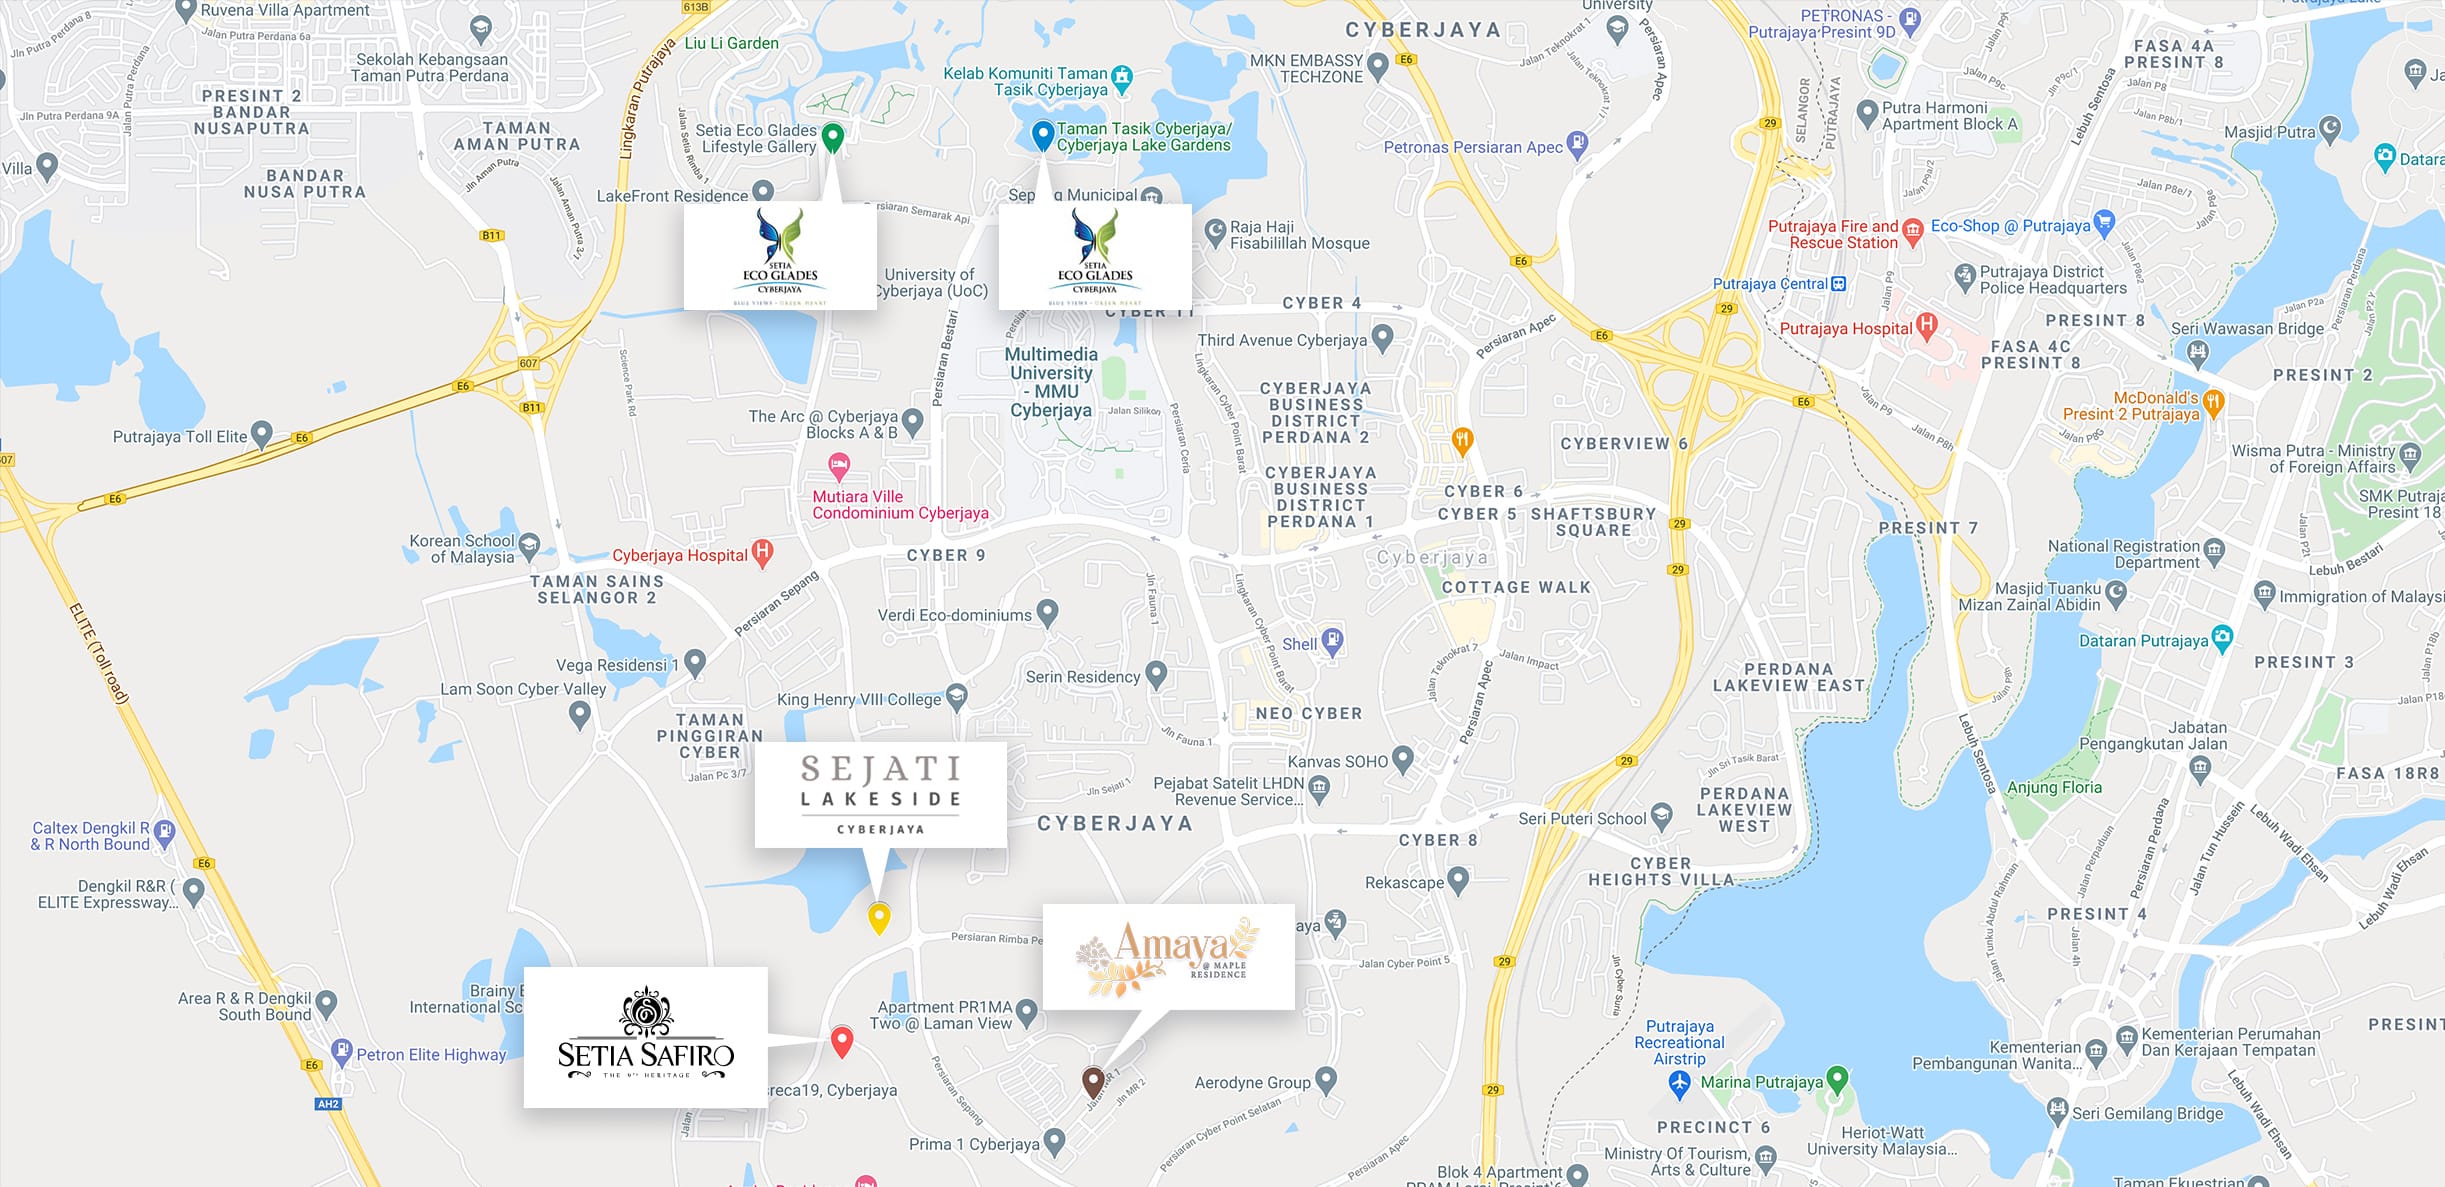 Cyberjaya Project Locations